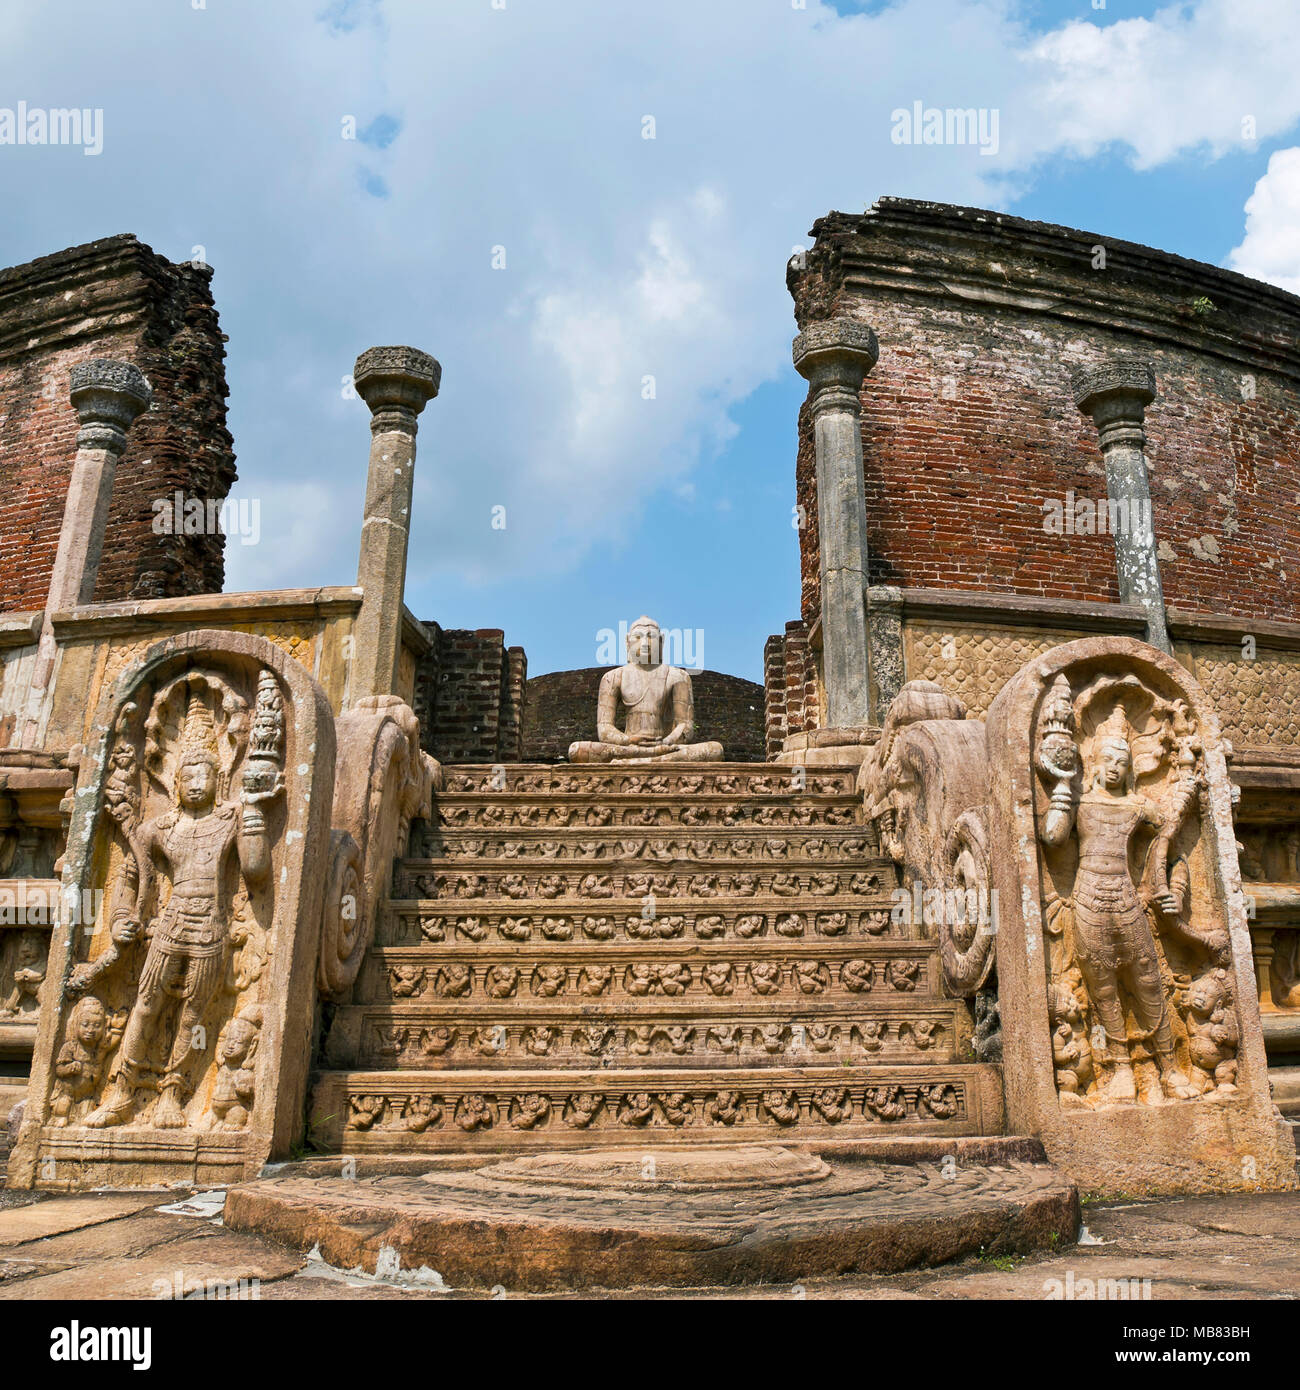 Con vista a la plaza del Vatadage en Polonnaruwa, Sri Lanka. Foto de stock